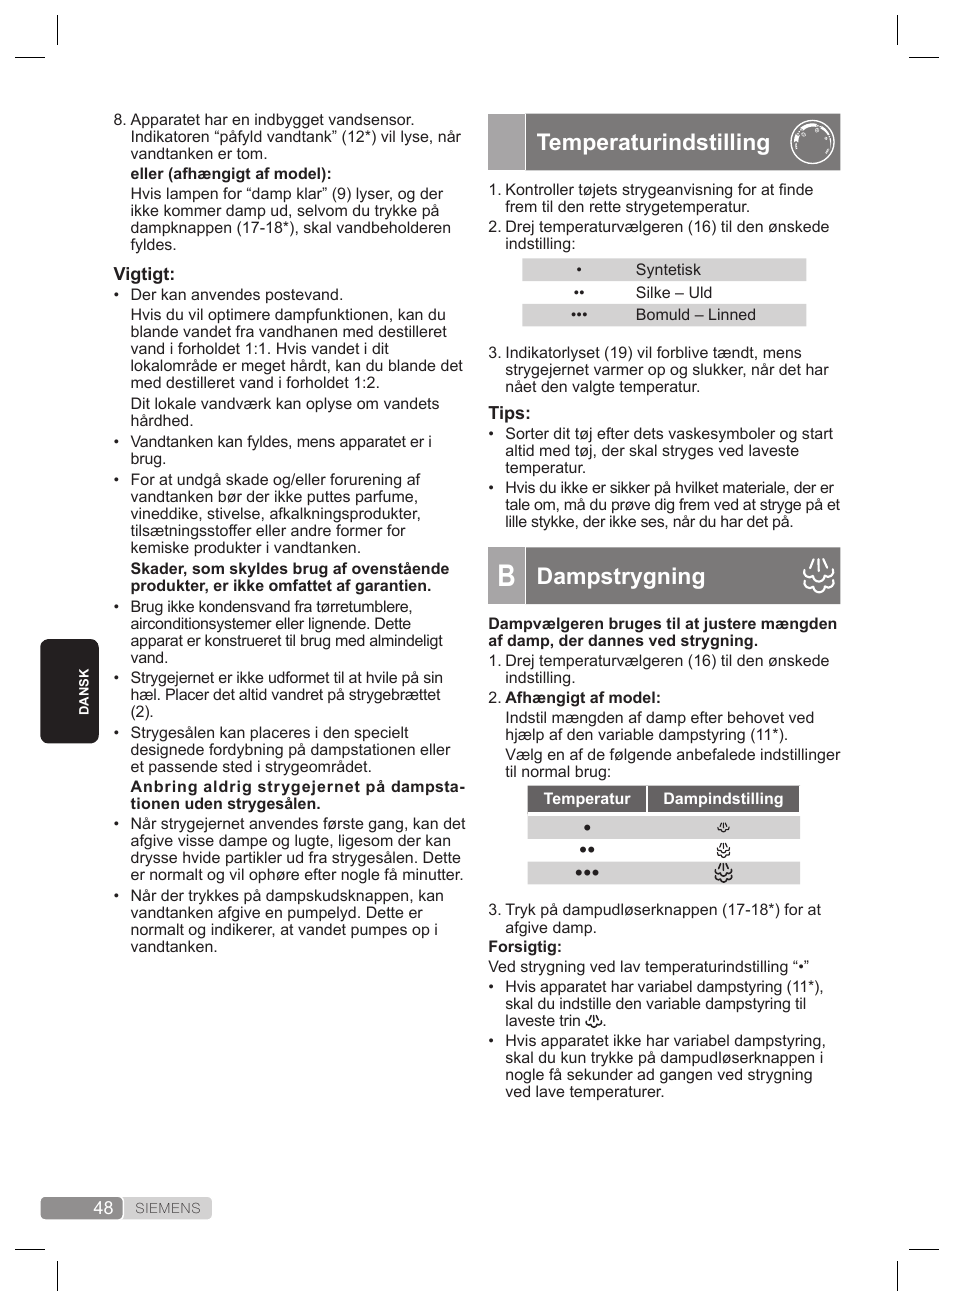 Temperaturindstilling, Dampstrygning | Siemens TS22XTRM User Manual | Page  48 / 160 | Original mode